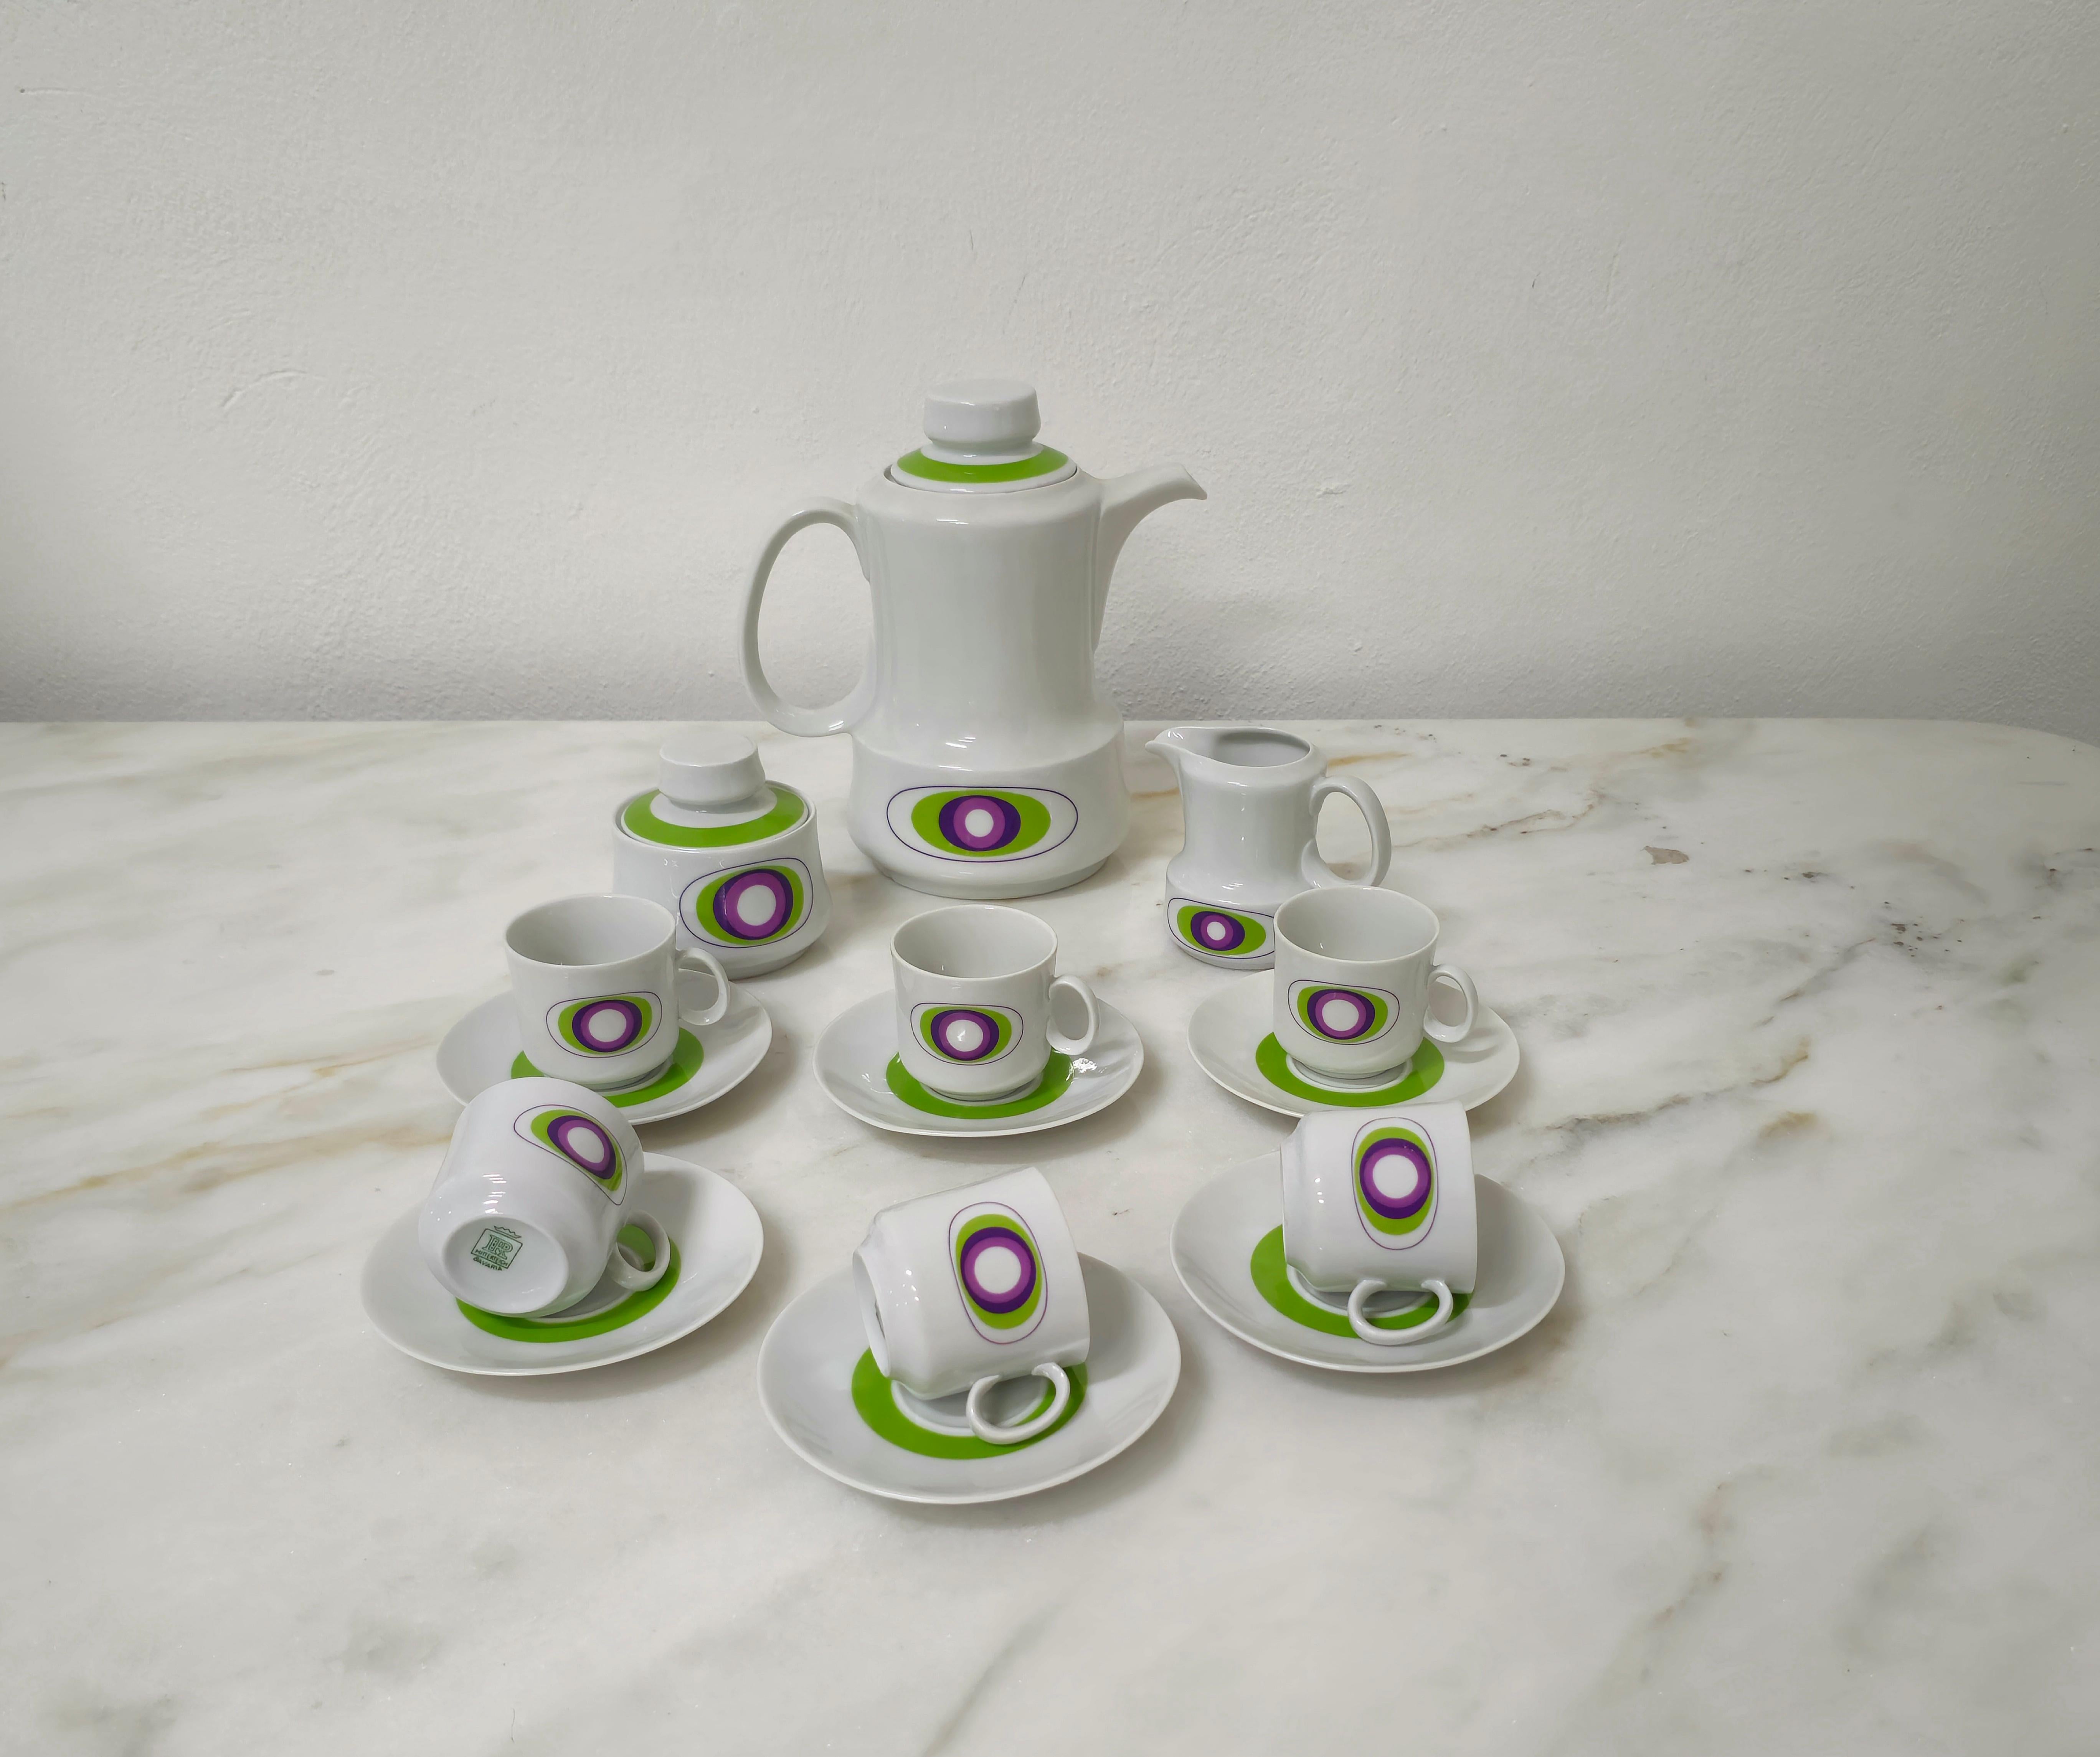 Joli service à café en porcelaine bavaroise avec décoration dans les tons de vert, violet et glycine. Le service se compose d'un pot à lait, d'un sucrier, d'une cafetière et de 6 tasses.



Note : Nous essayons d'offrir à nos clients un excellent